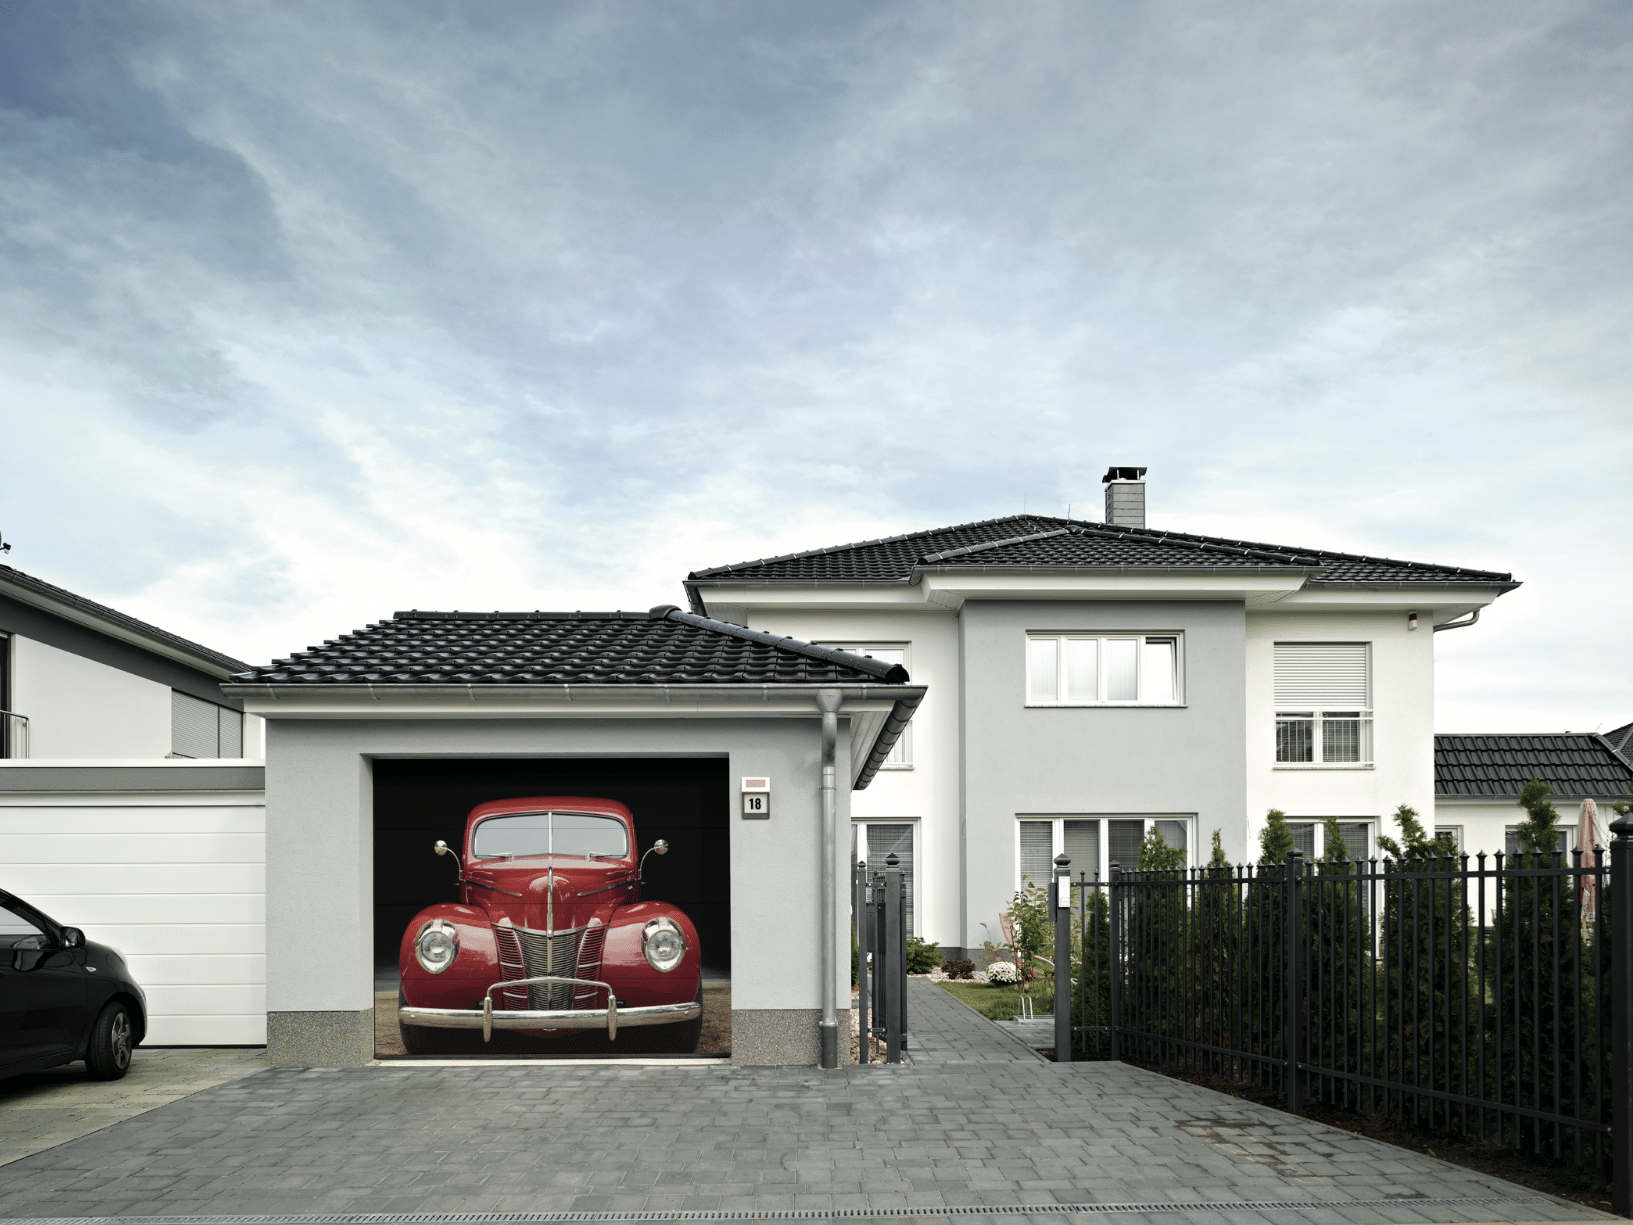 Einfamilienhaus mit individuell gestaltetem Garagentor von HÖRMANN.